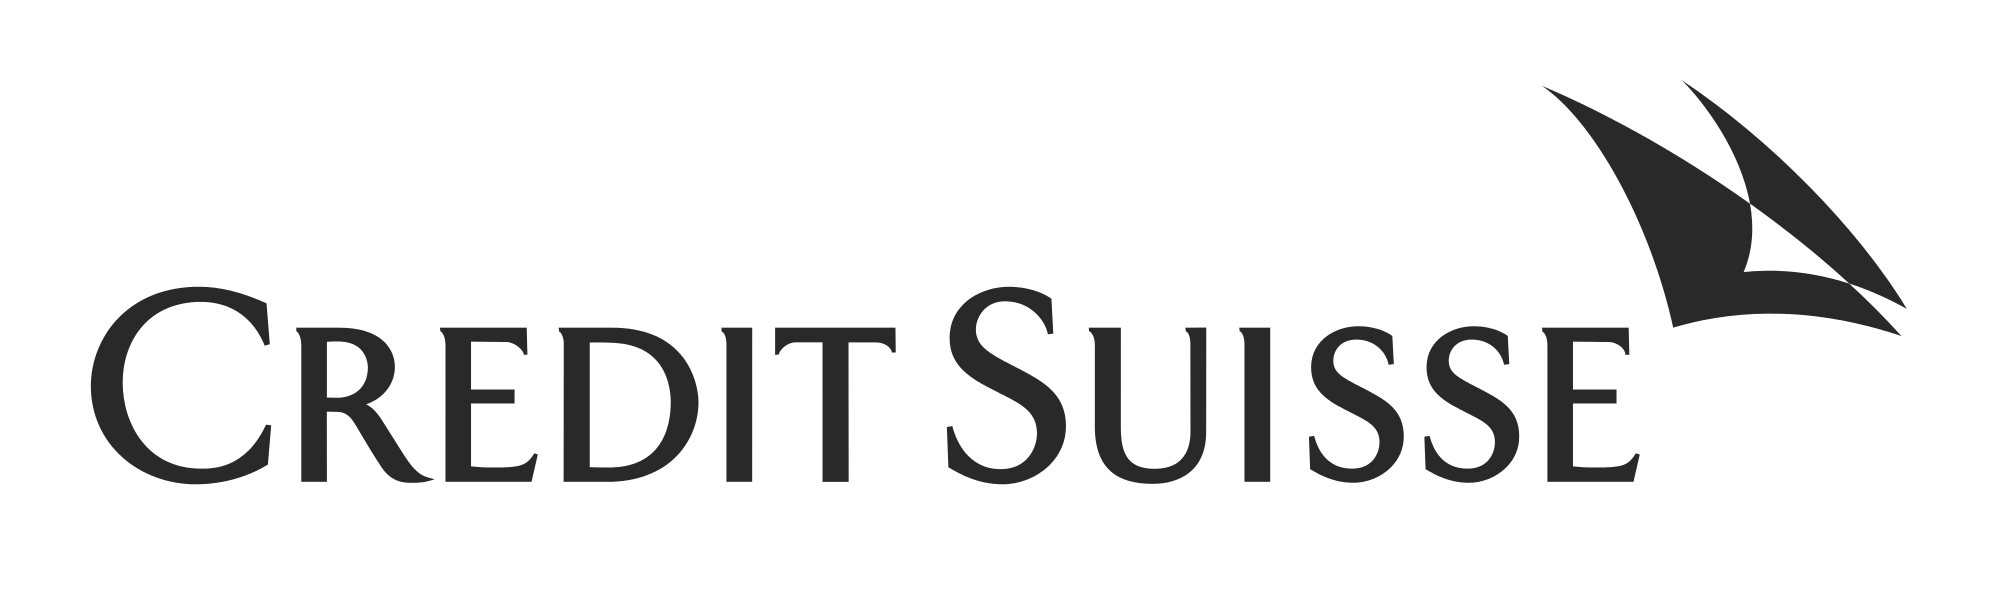 Credit_Suisse_Logo.svg.png